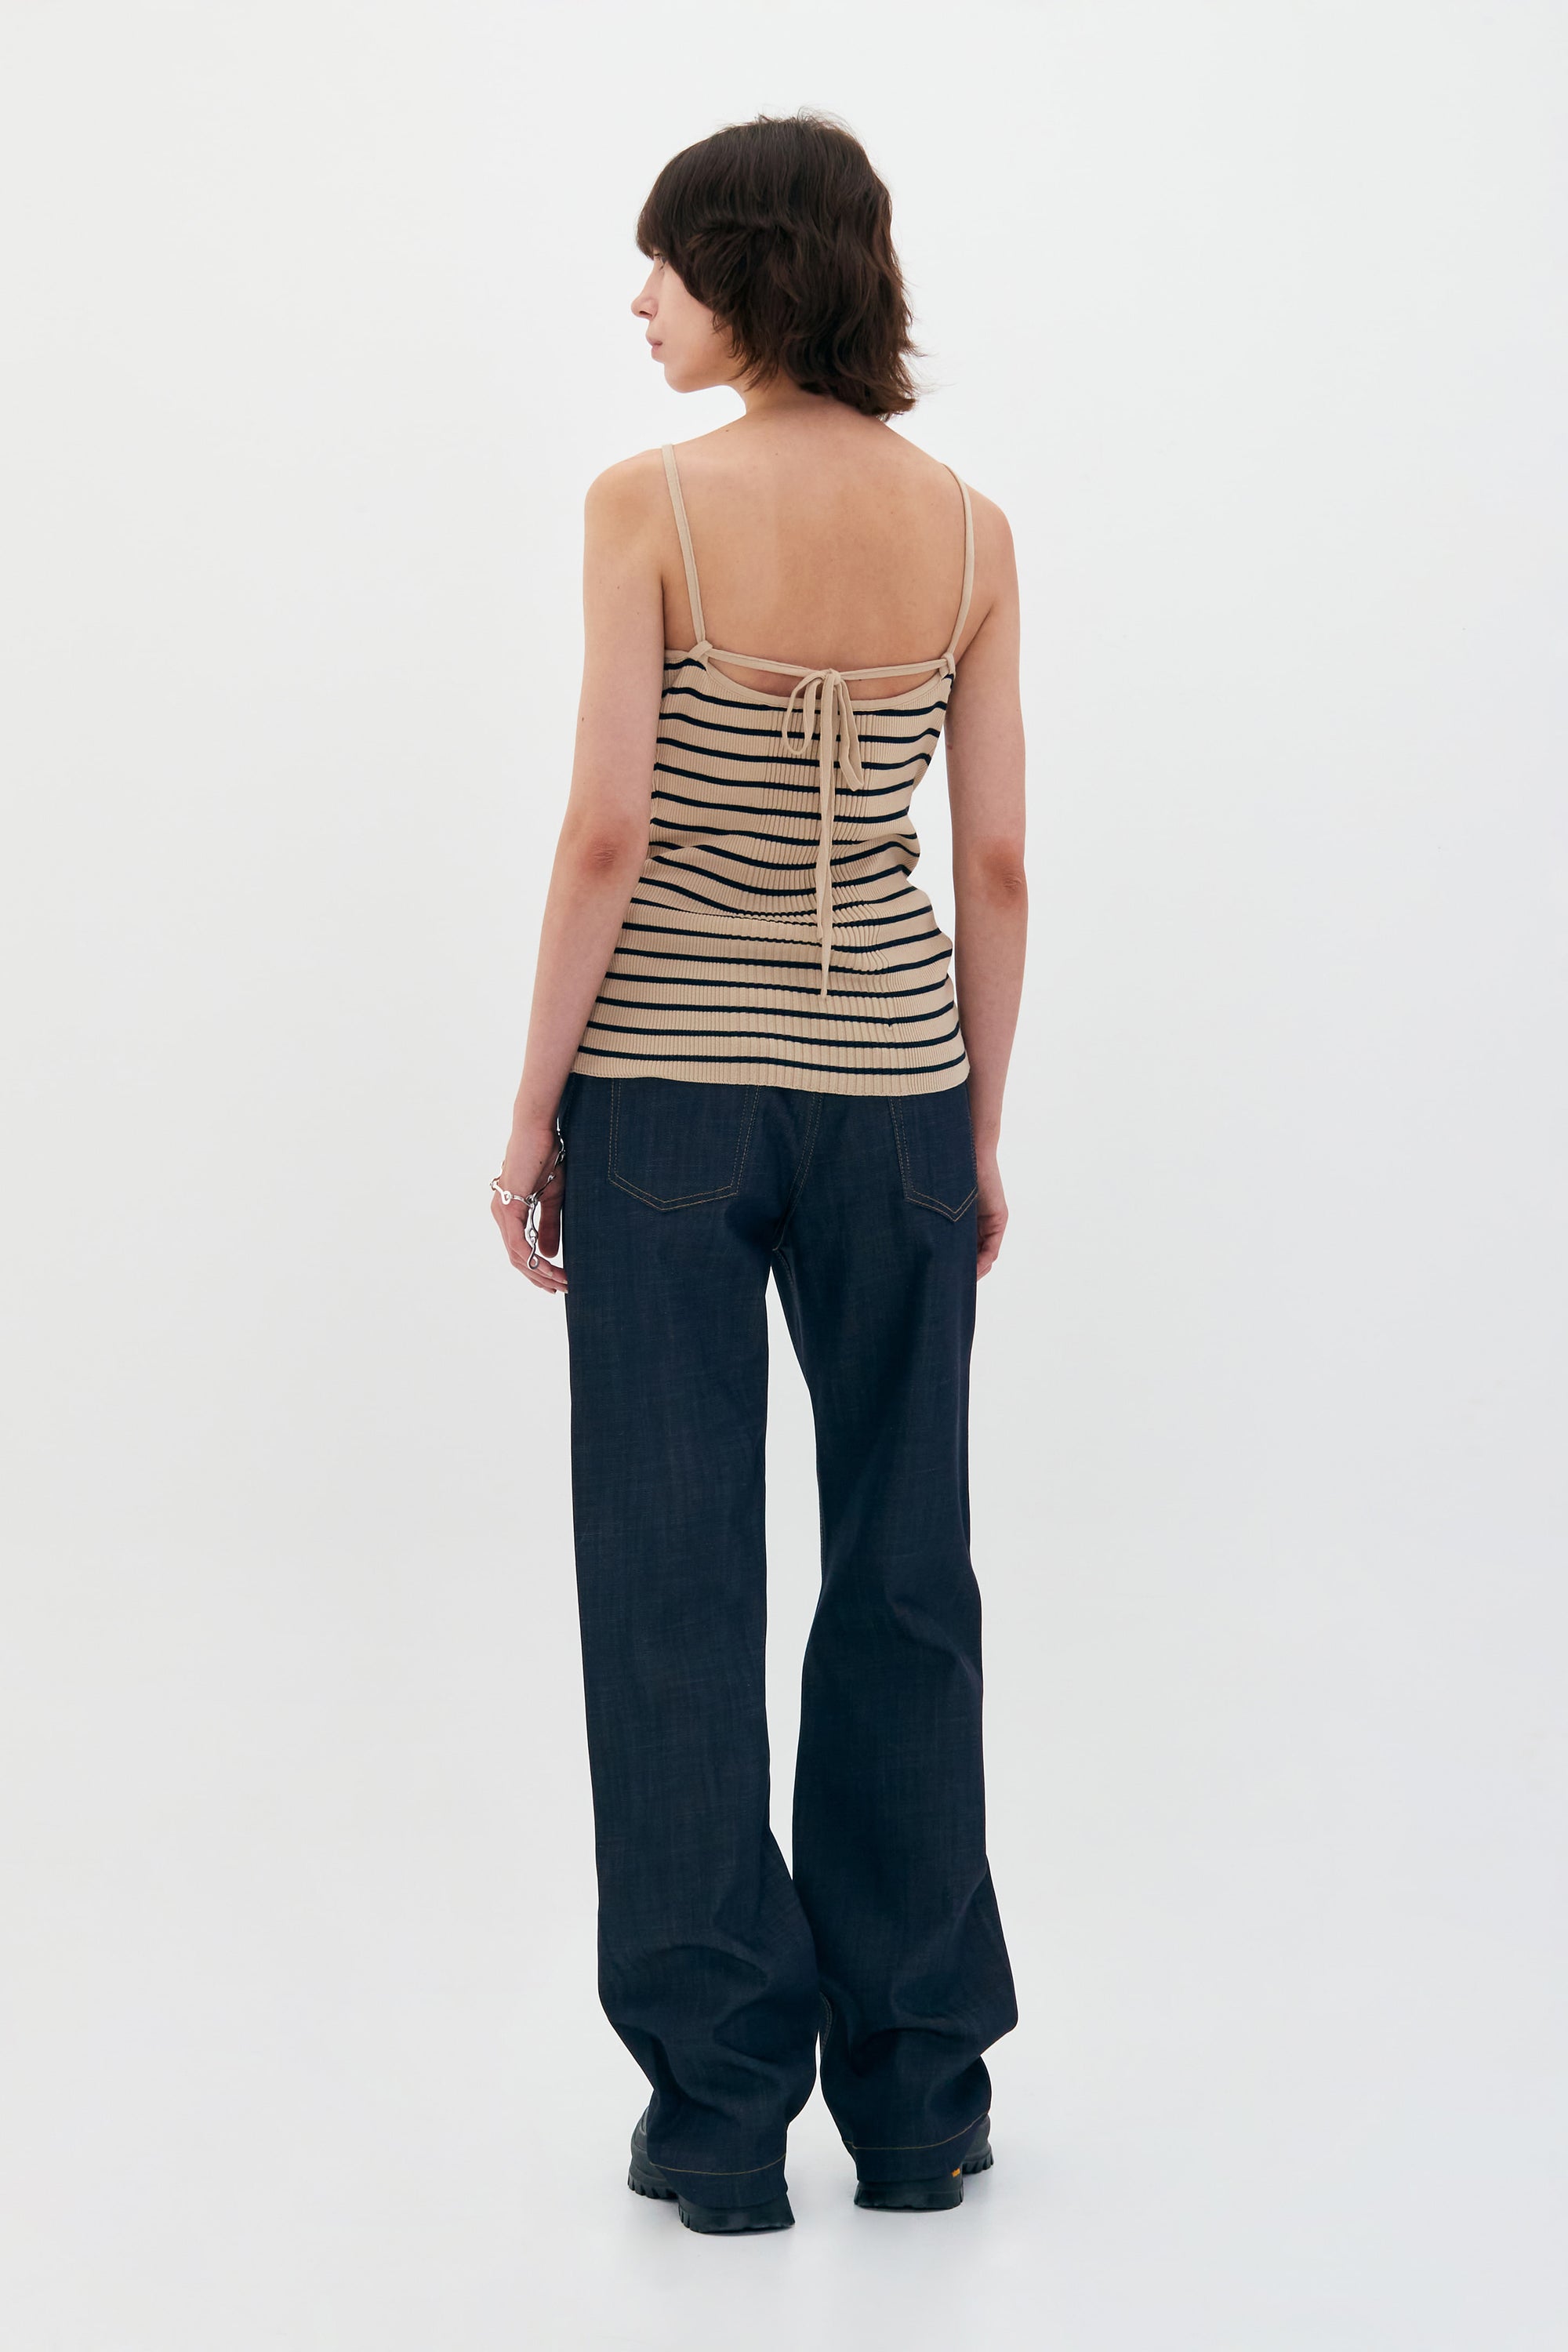 Sleeveless Knit Halter in Beige Stripe by Low Classic http://www.shoprecital.com